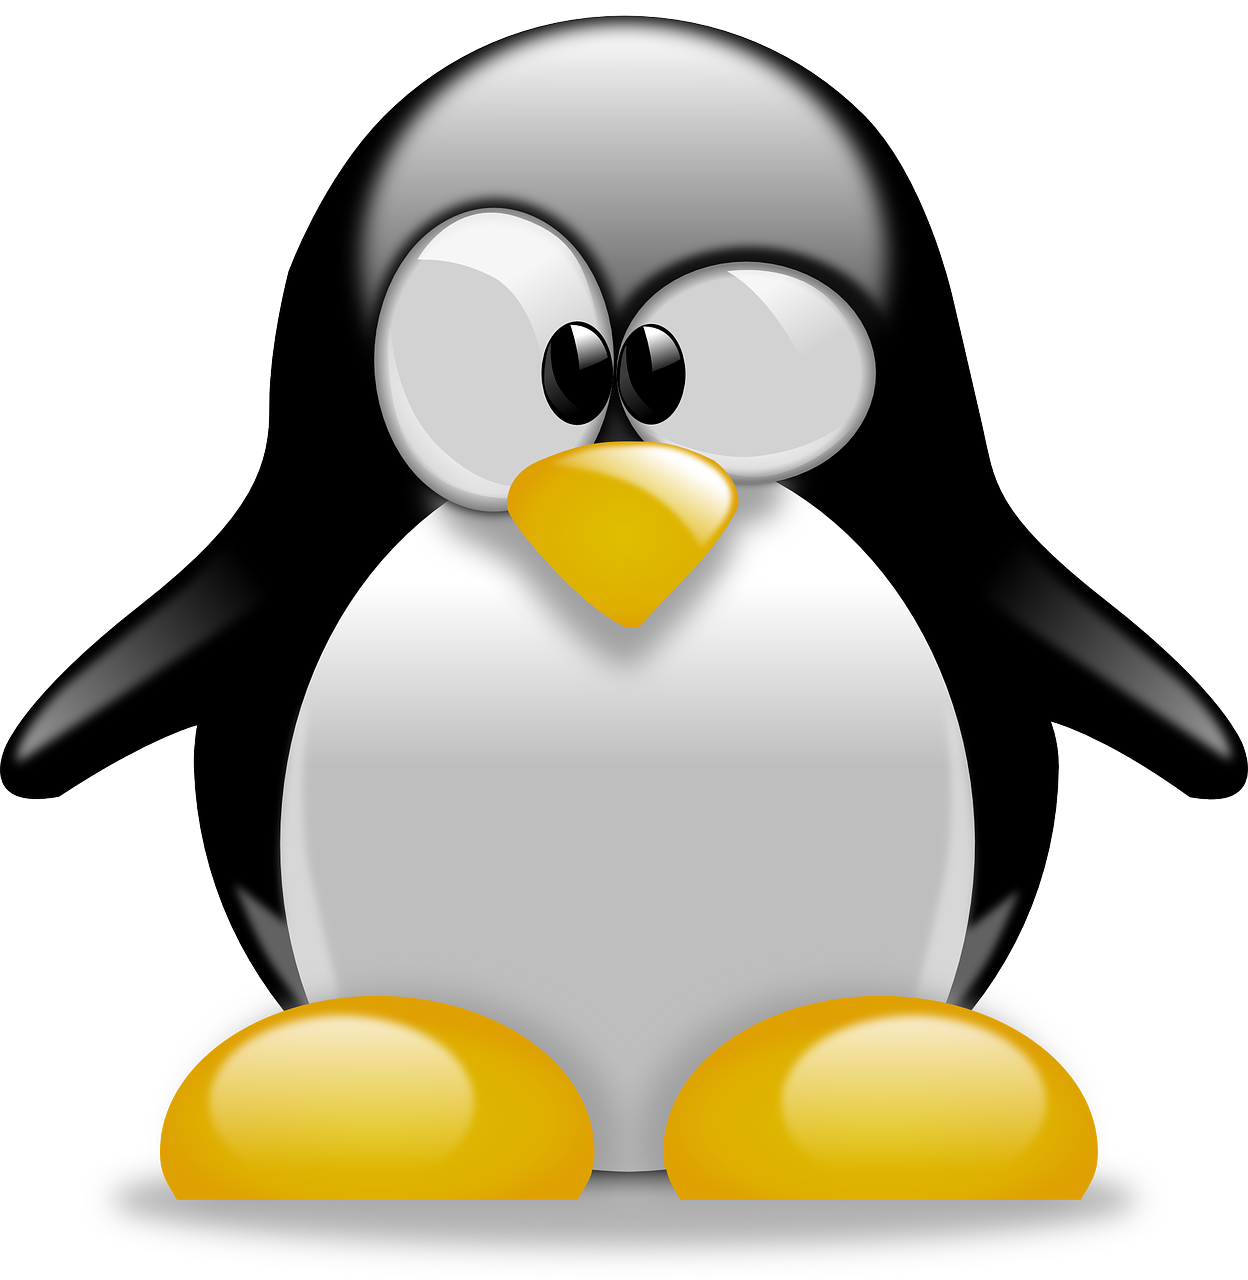 Linux 5.11 RC4 lançado com NVIDIA RTX 30 Mode-Setting e Haswell GT1 Graphics Restored